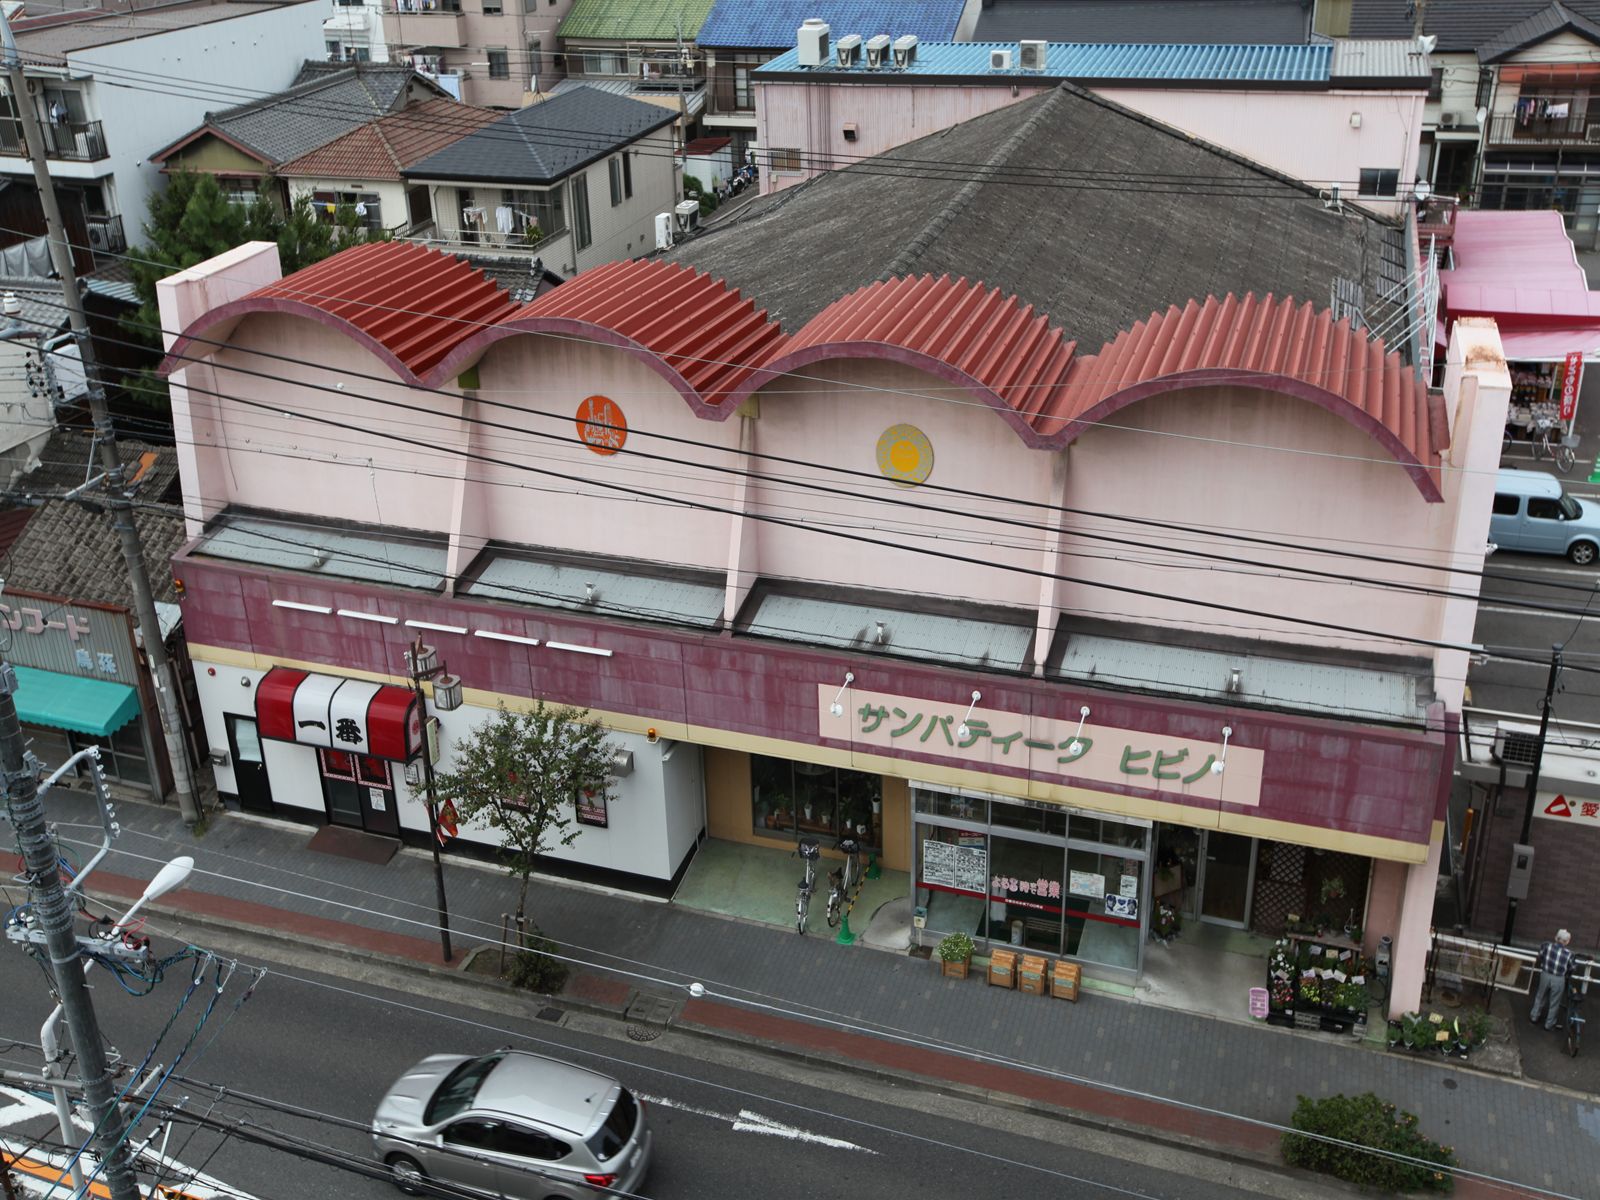 Supermarket. 196m to San Patiku Hibino (super)